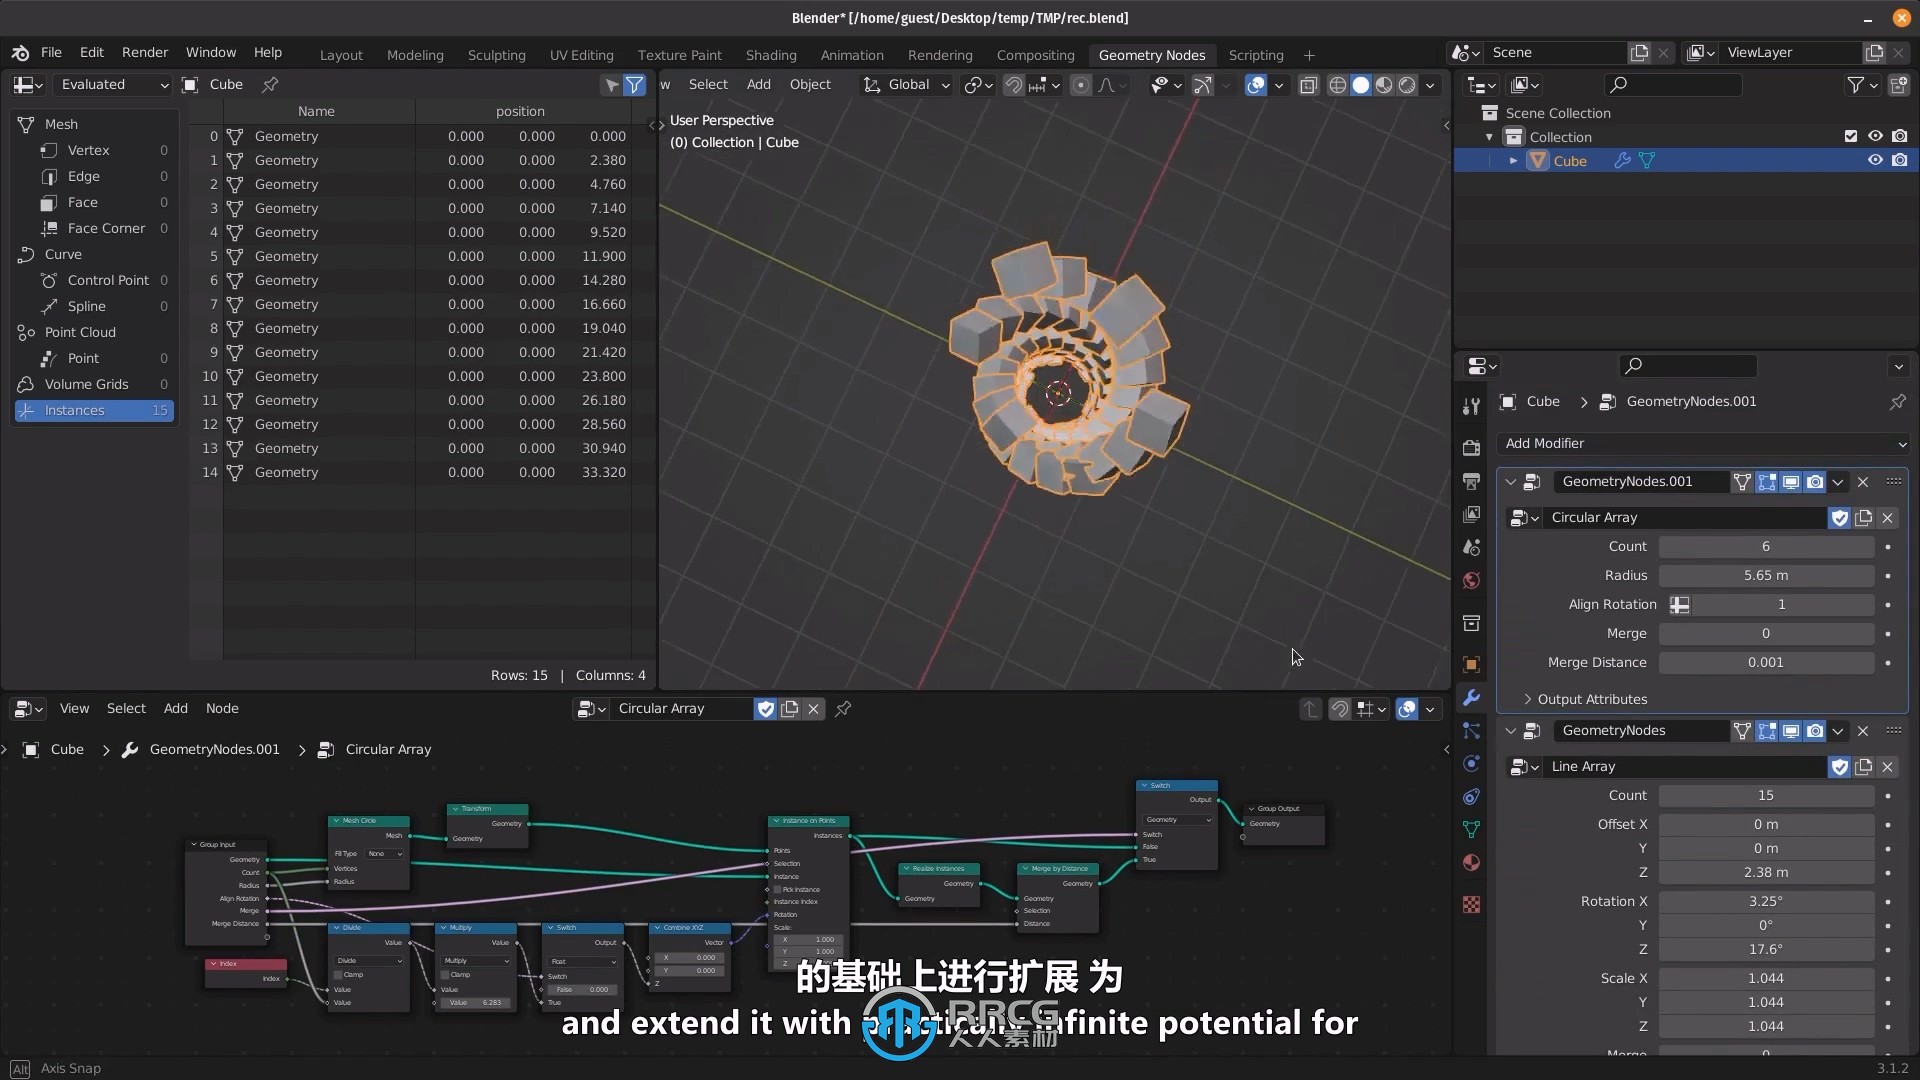 【中英双语】Blender几何节点基础核心技术训练视频教程